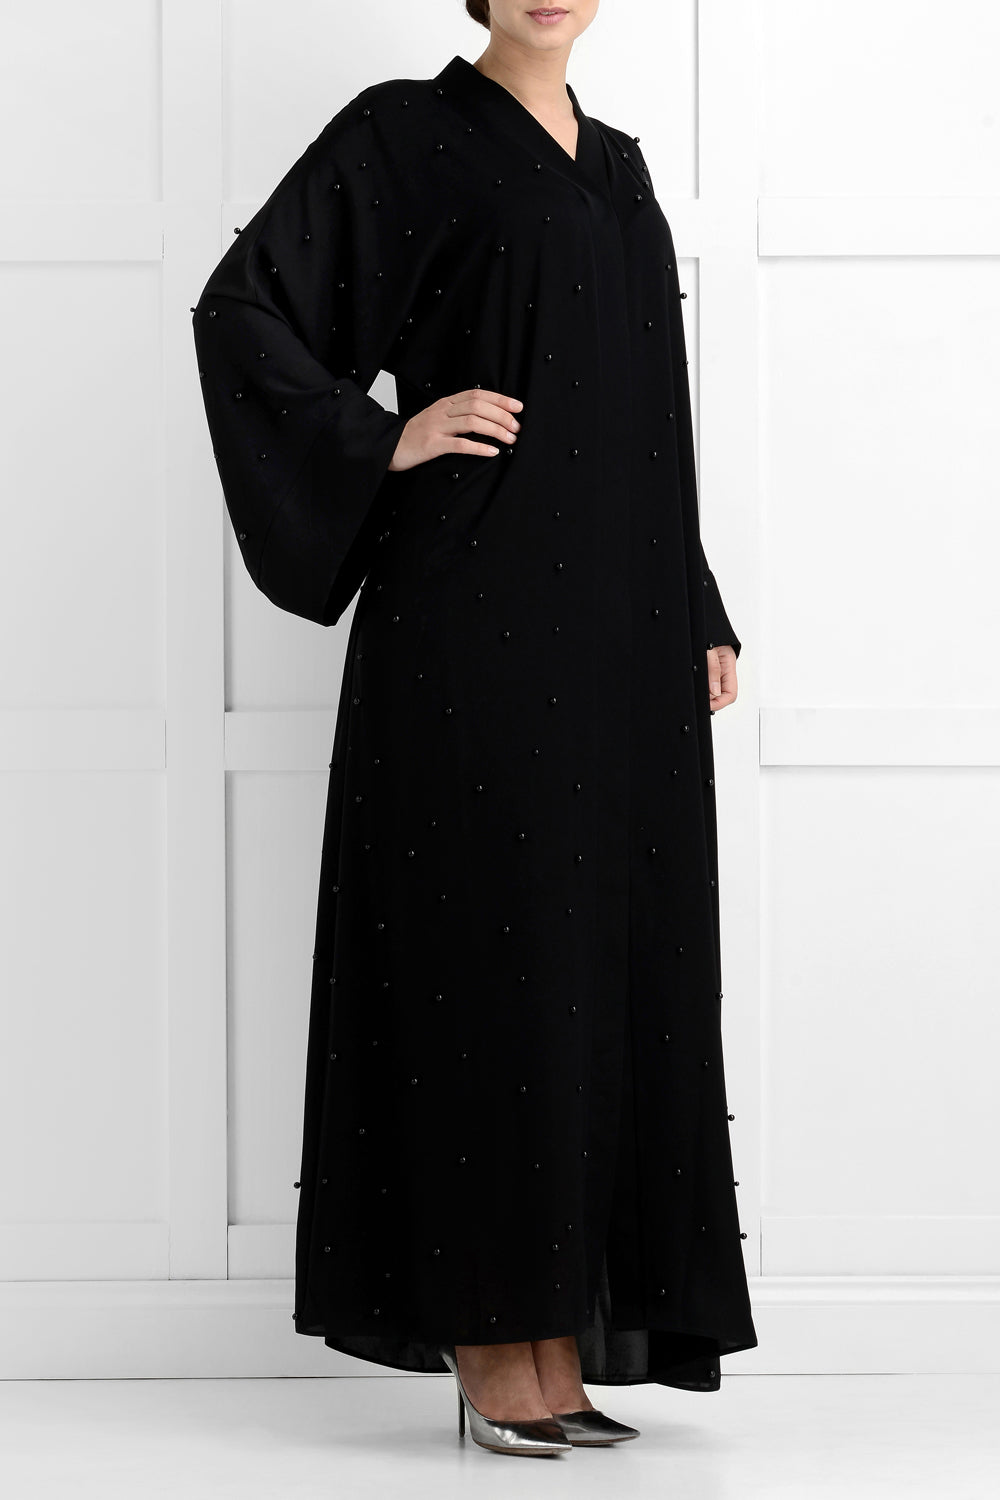 Daisha Luxury Black Pearl Abaya